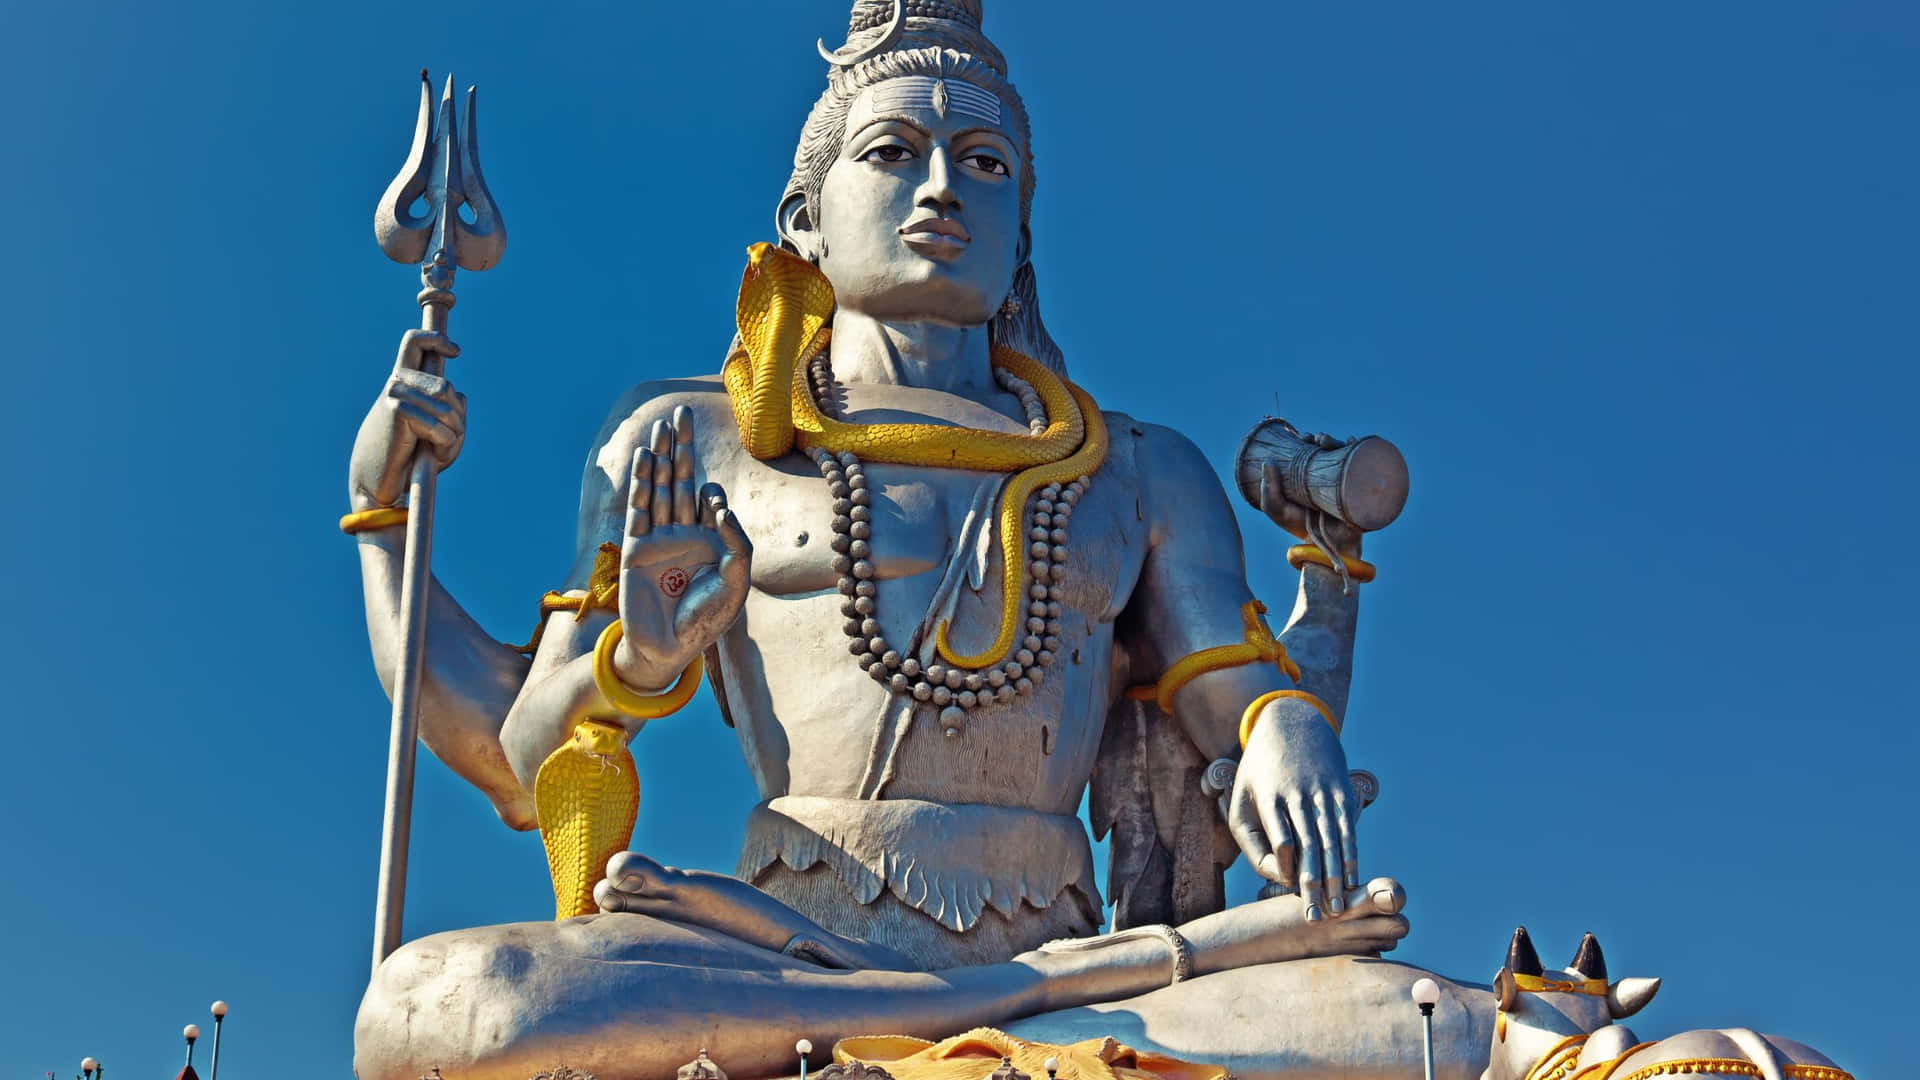 Unagrande Statua Di Lord Shiva Si Trova Al Centro Di Un Campo.